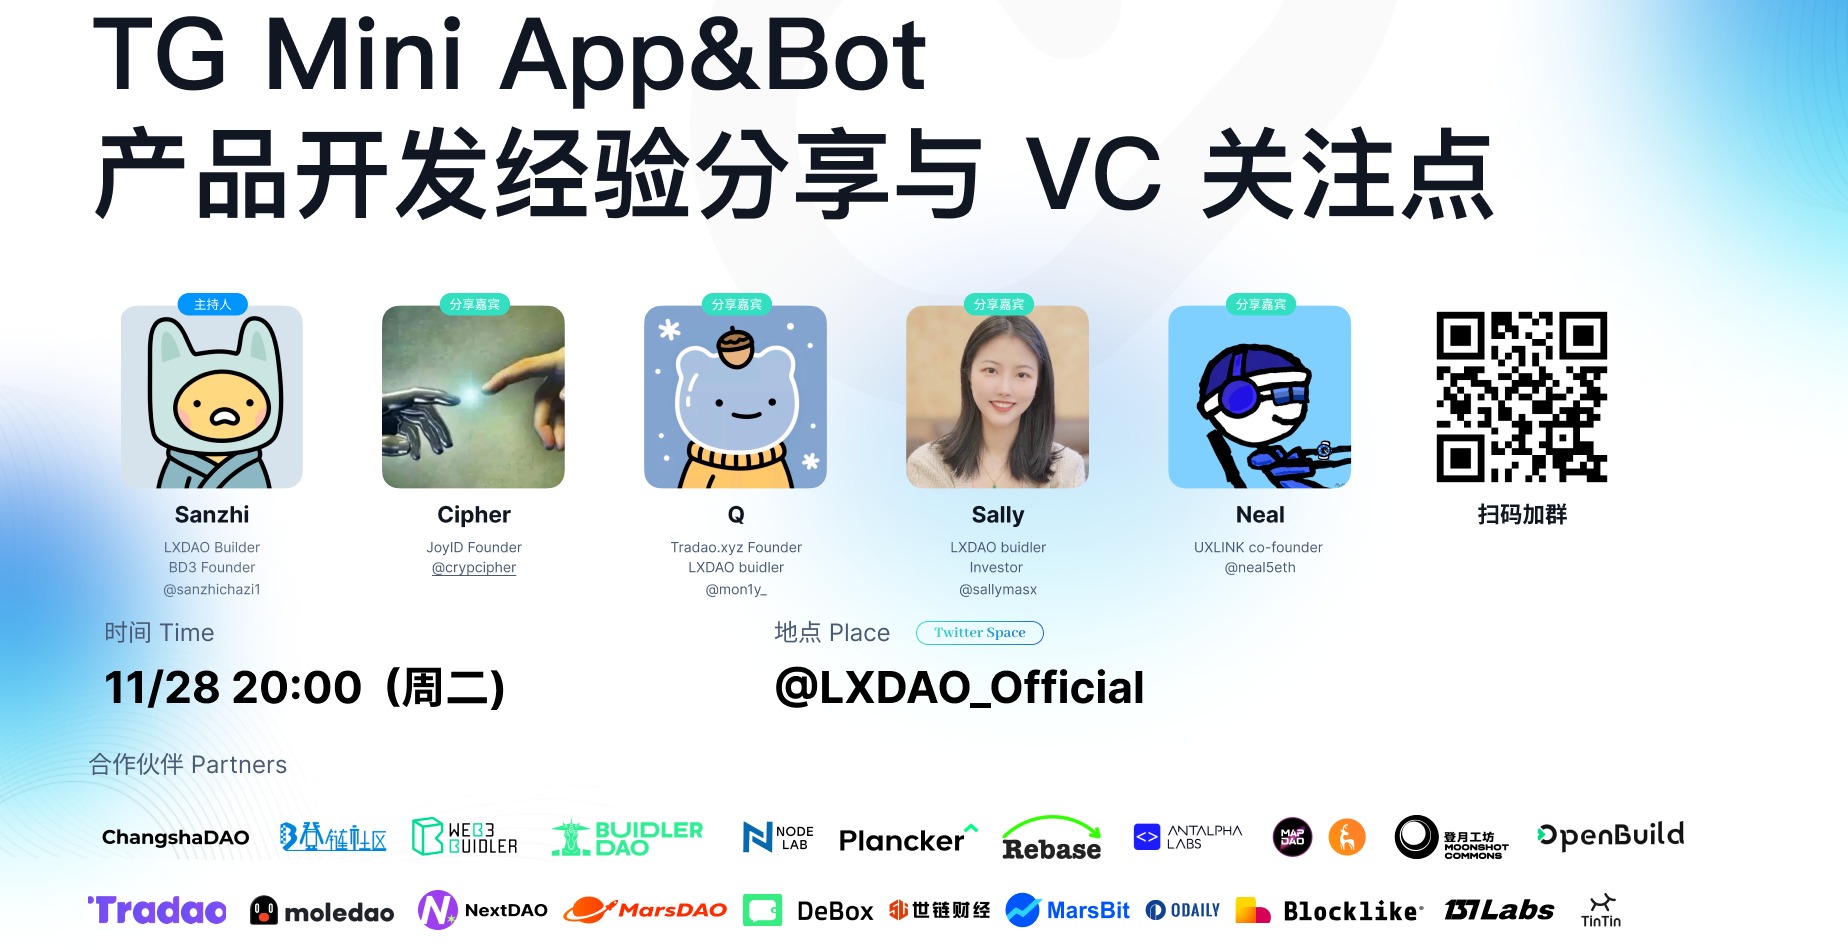 良心分享会｜TG Mini App&Bot 产品开发经验分享与 VC 关注点